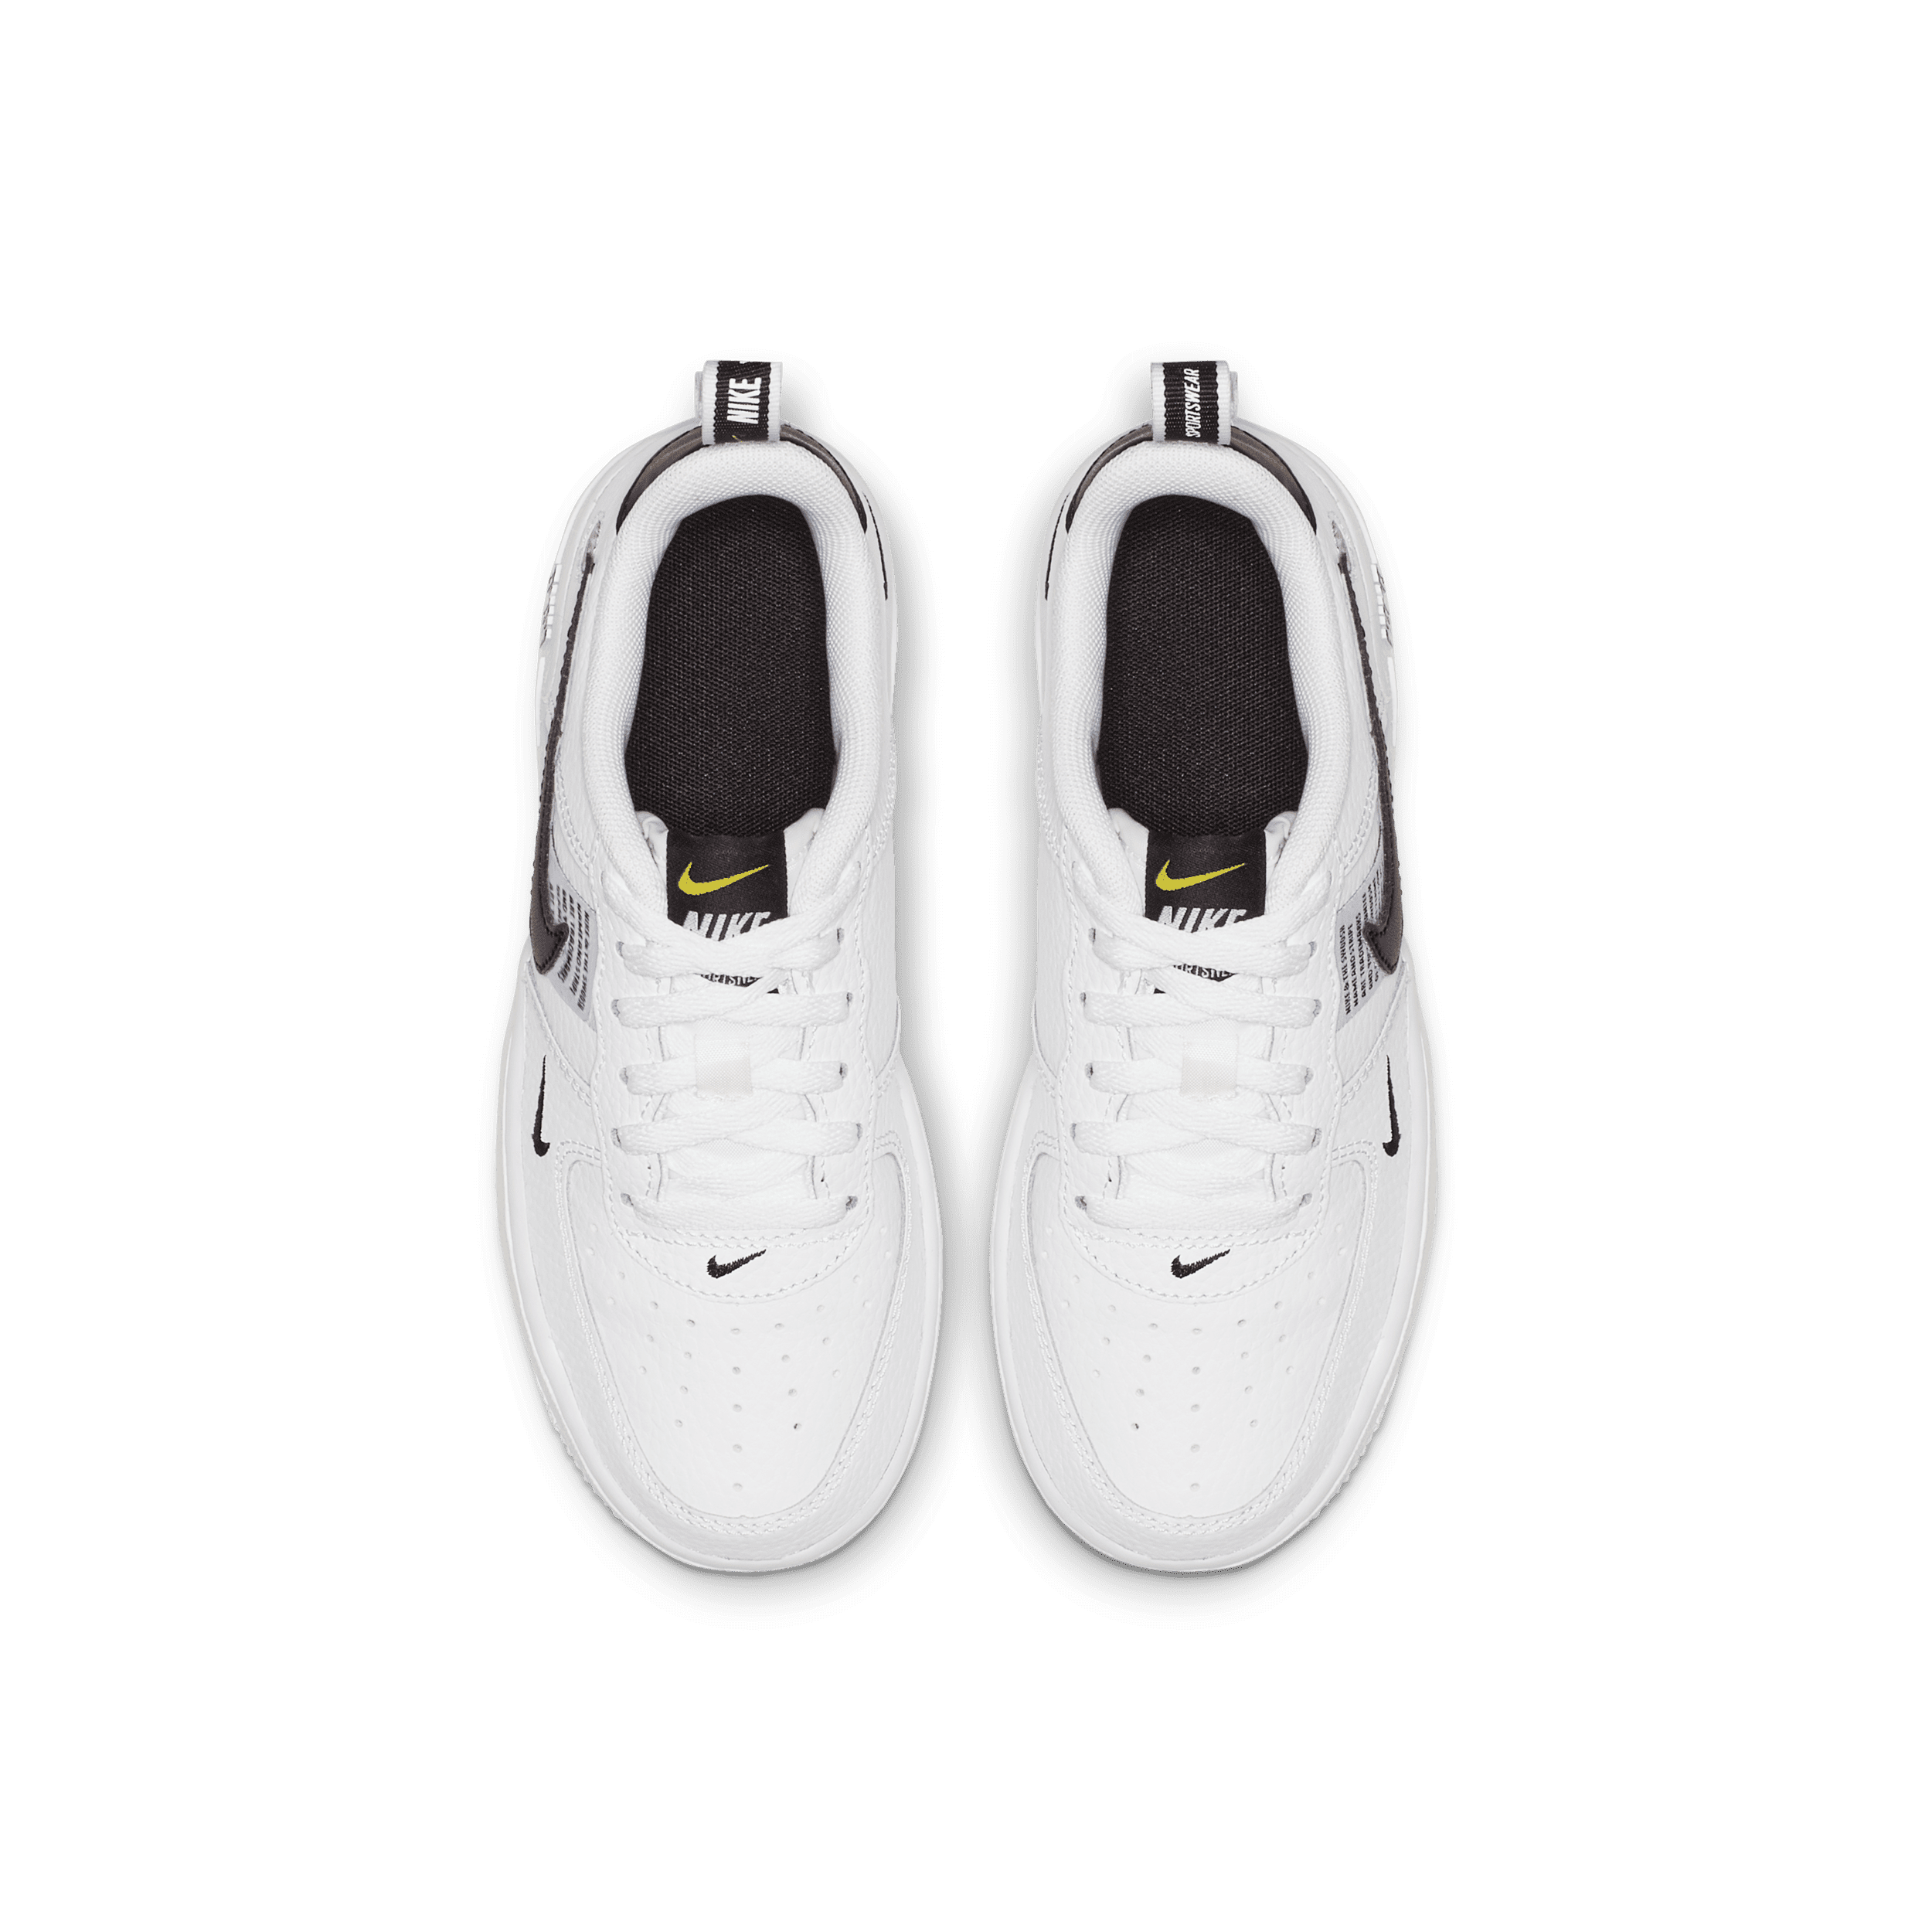 Nike Air Force 1 LV8 PS Utility White Black Leather AV4272-100 Kids Size 12C